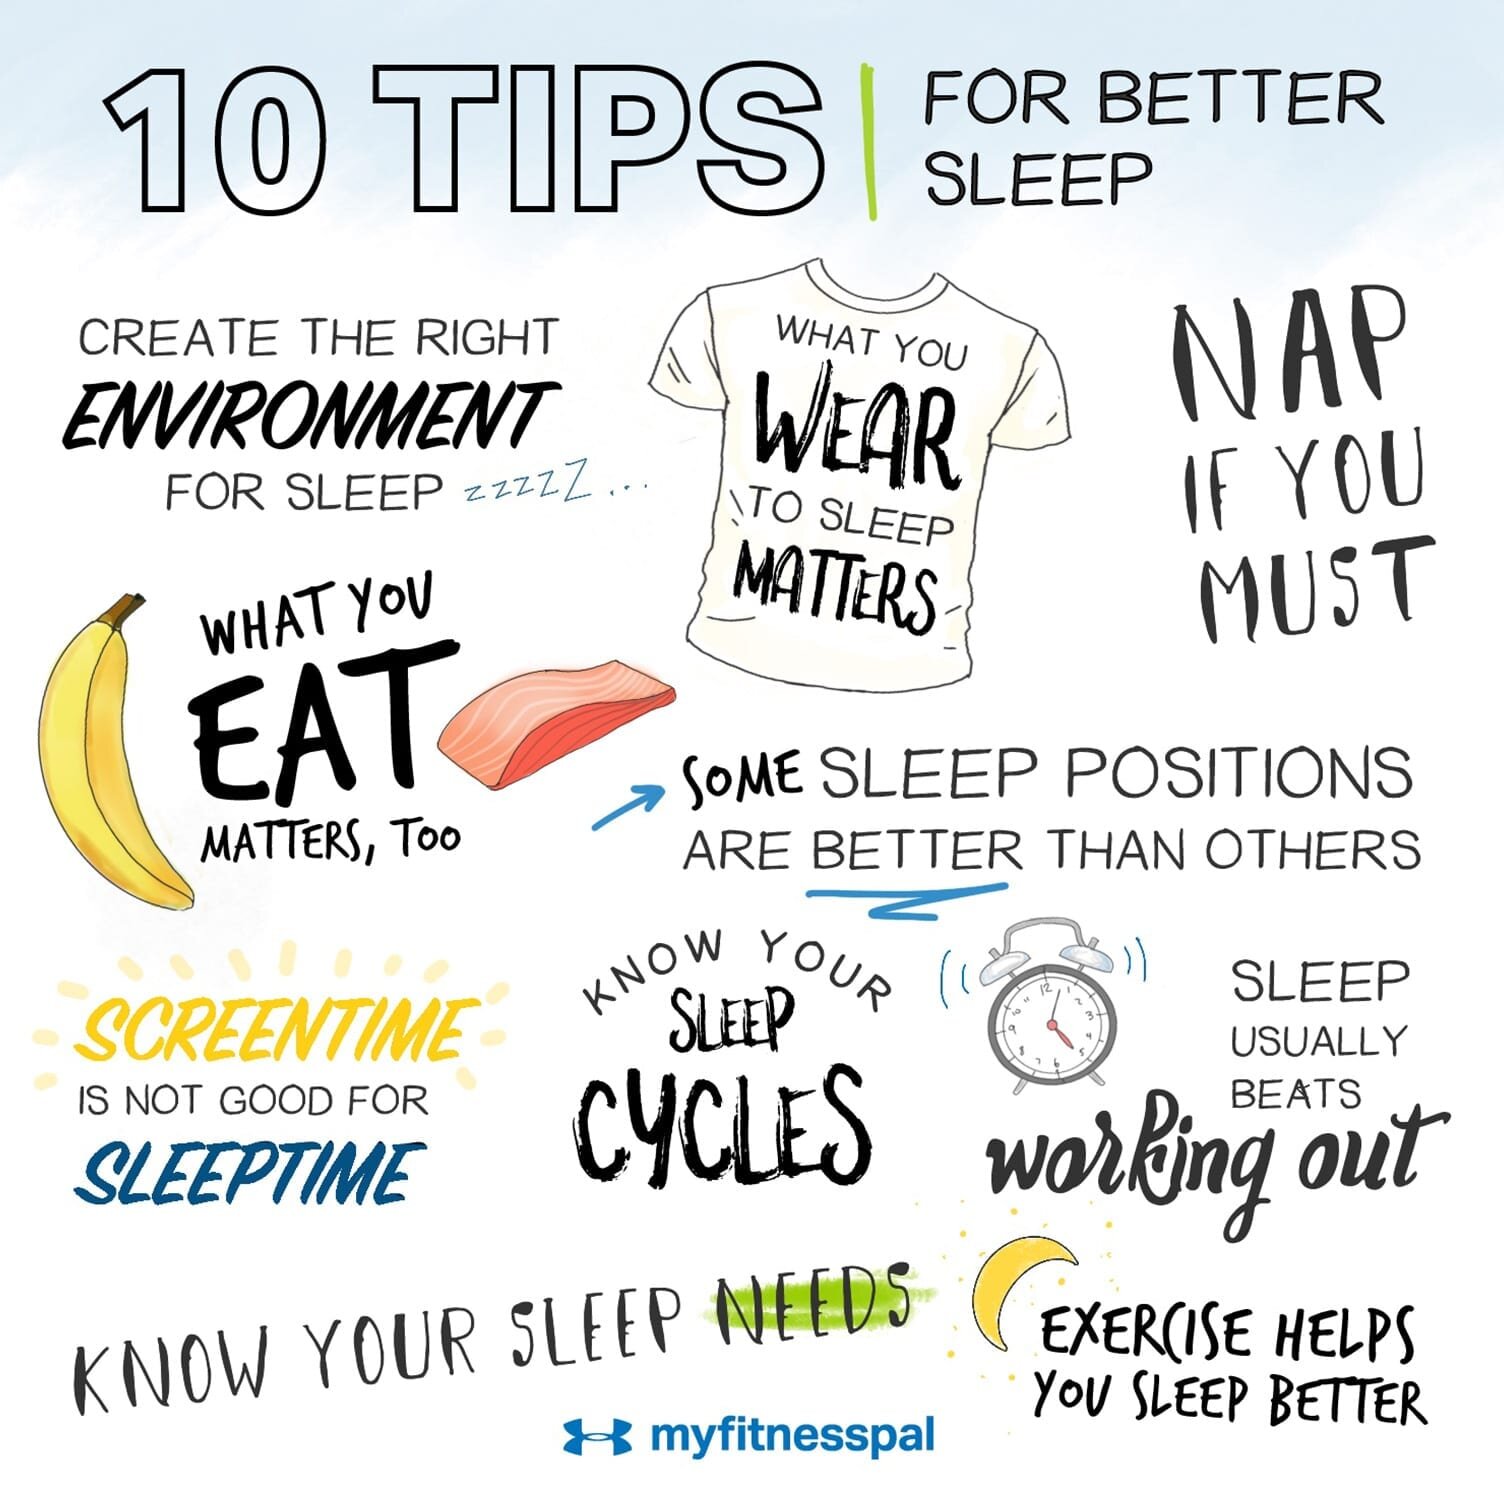 10 tips for better sleep.jpg